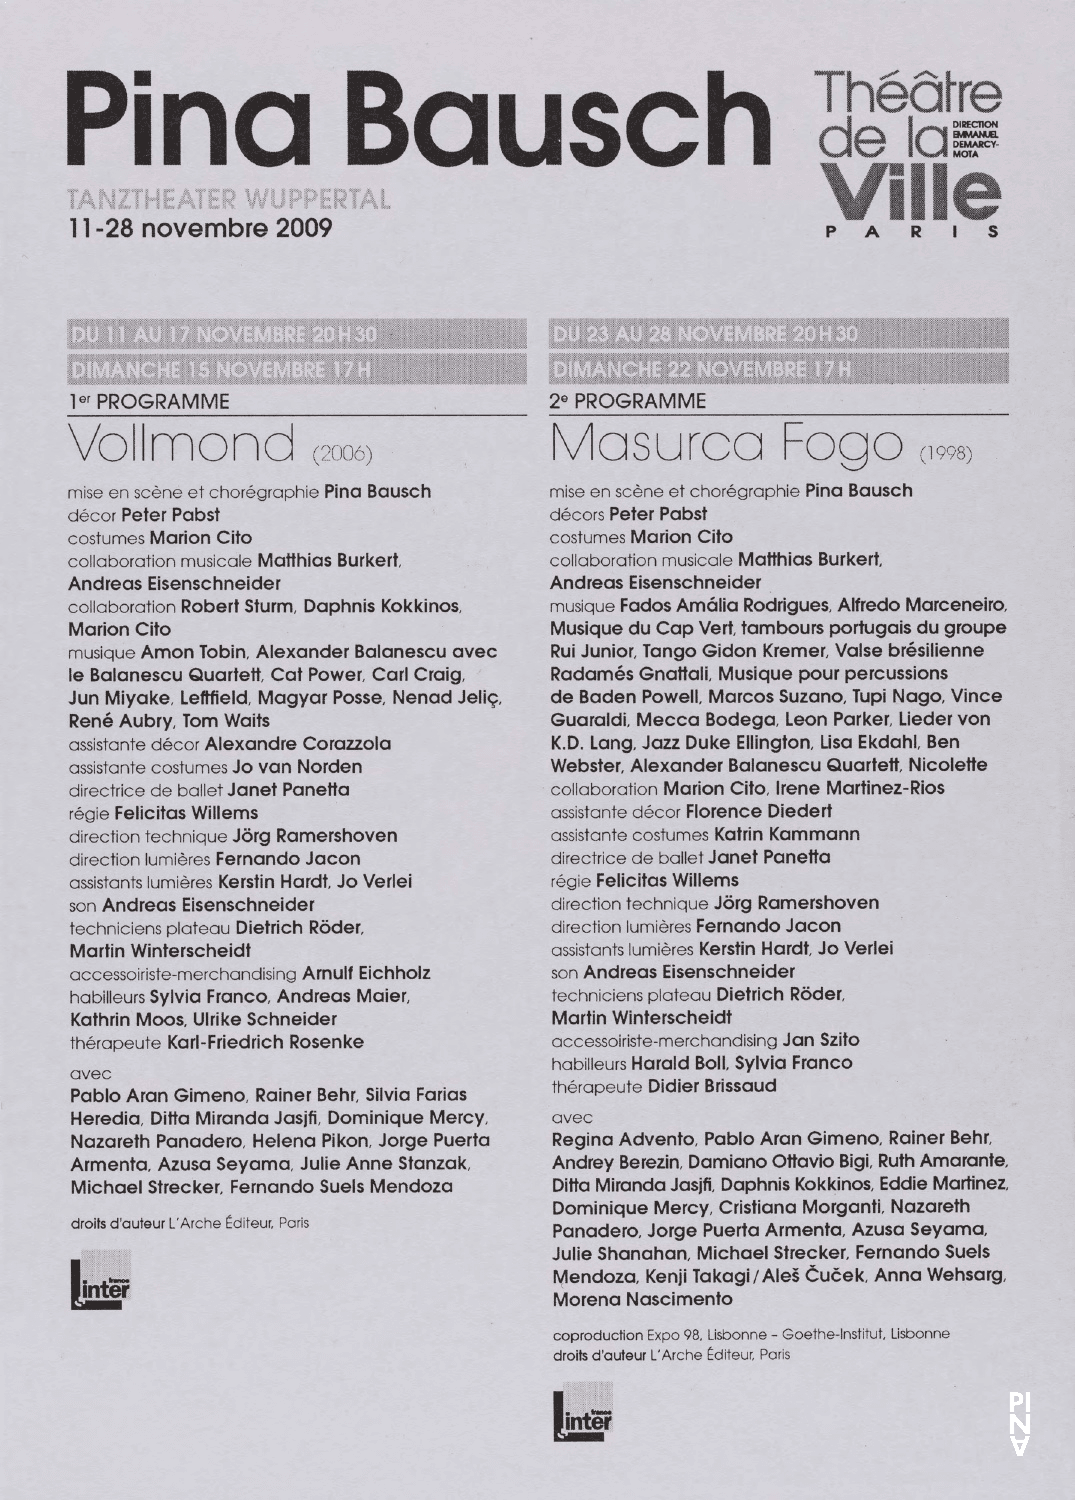 Programme pour « Vollmond (Pleine lune) » et « Masurca Fogo » de Pina Bausch avec Tanztheater Wuppertal à Paris, 11 nov. 2009 – 28 nov. 2009